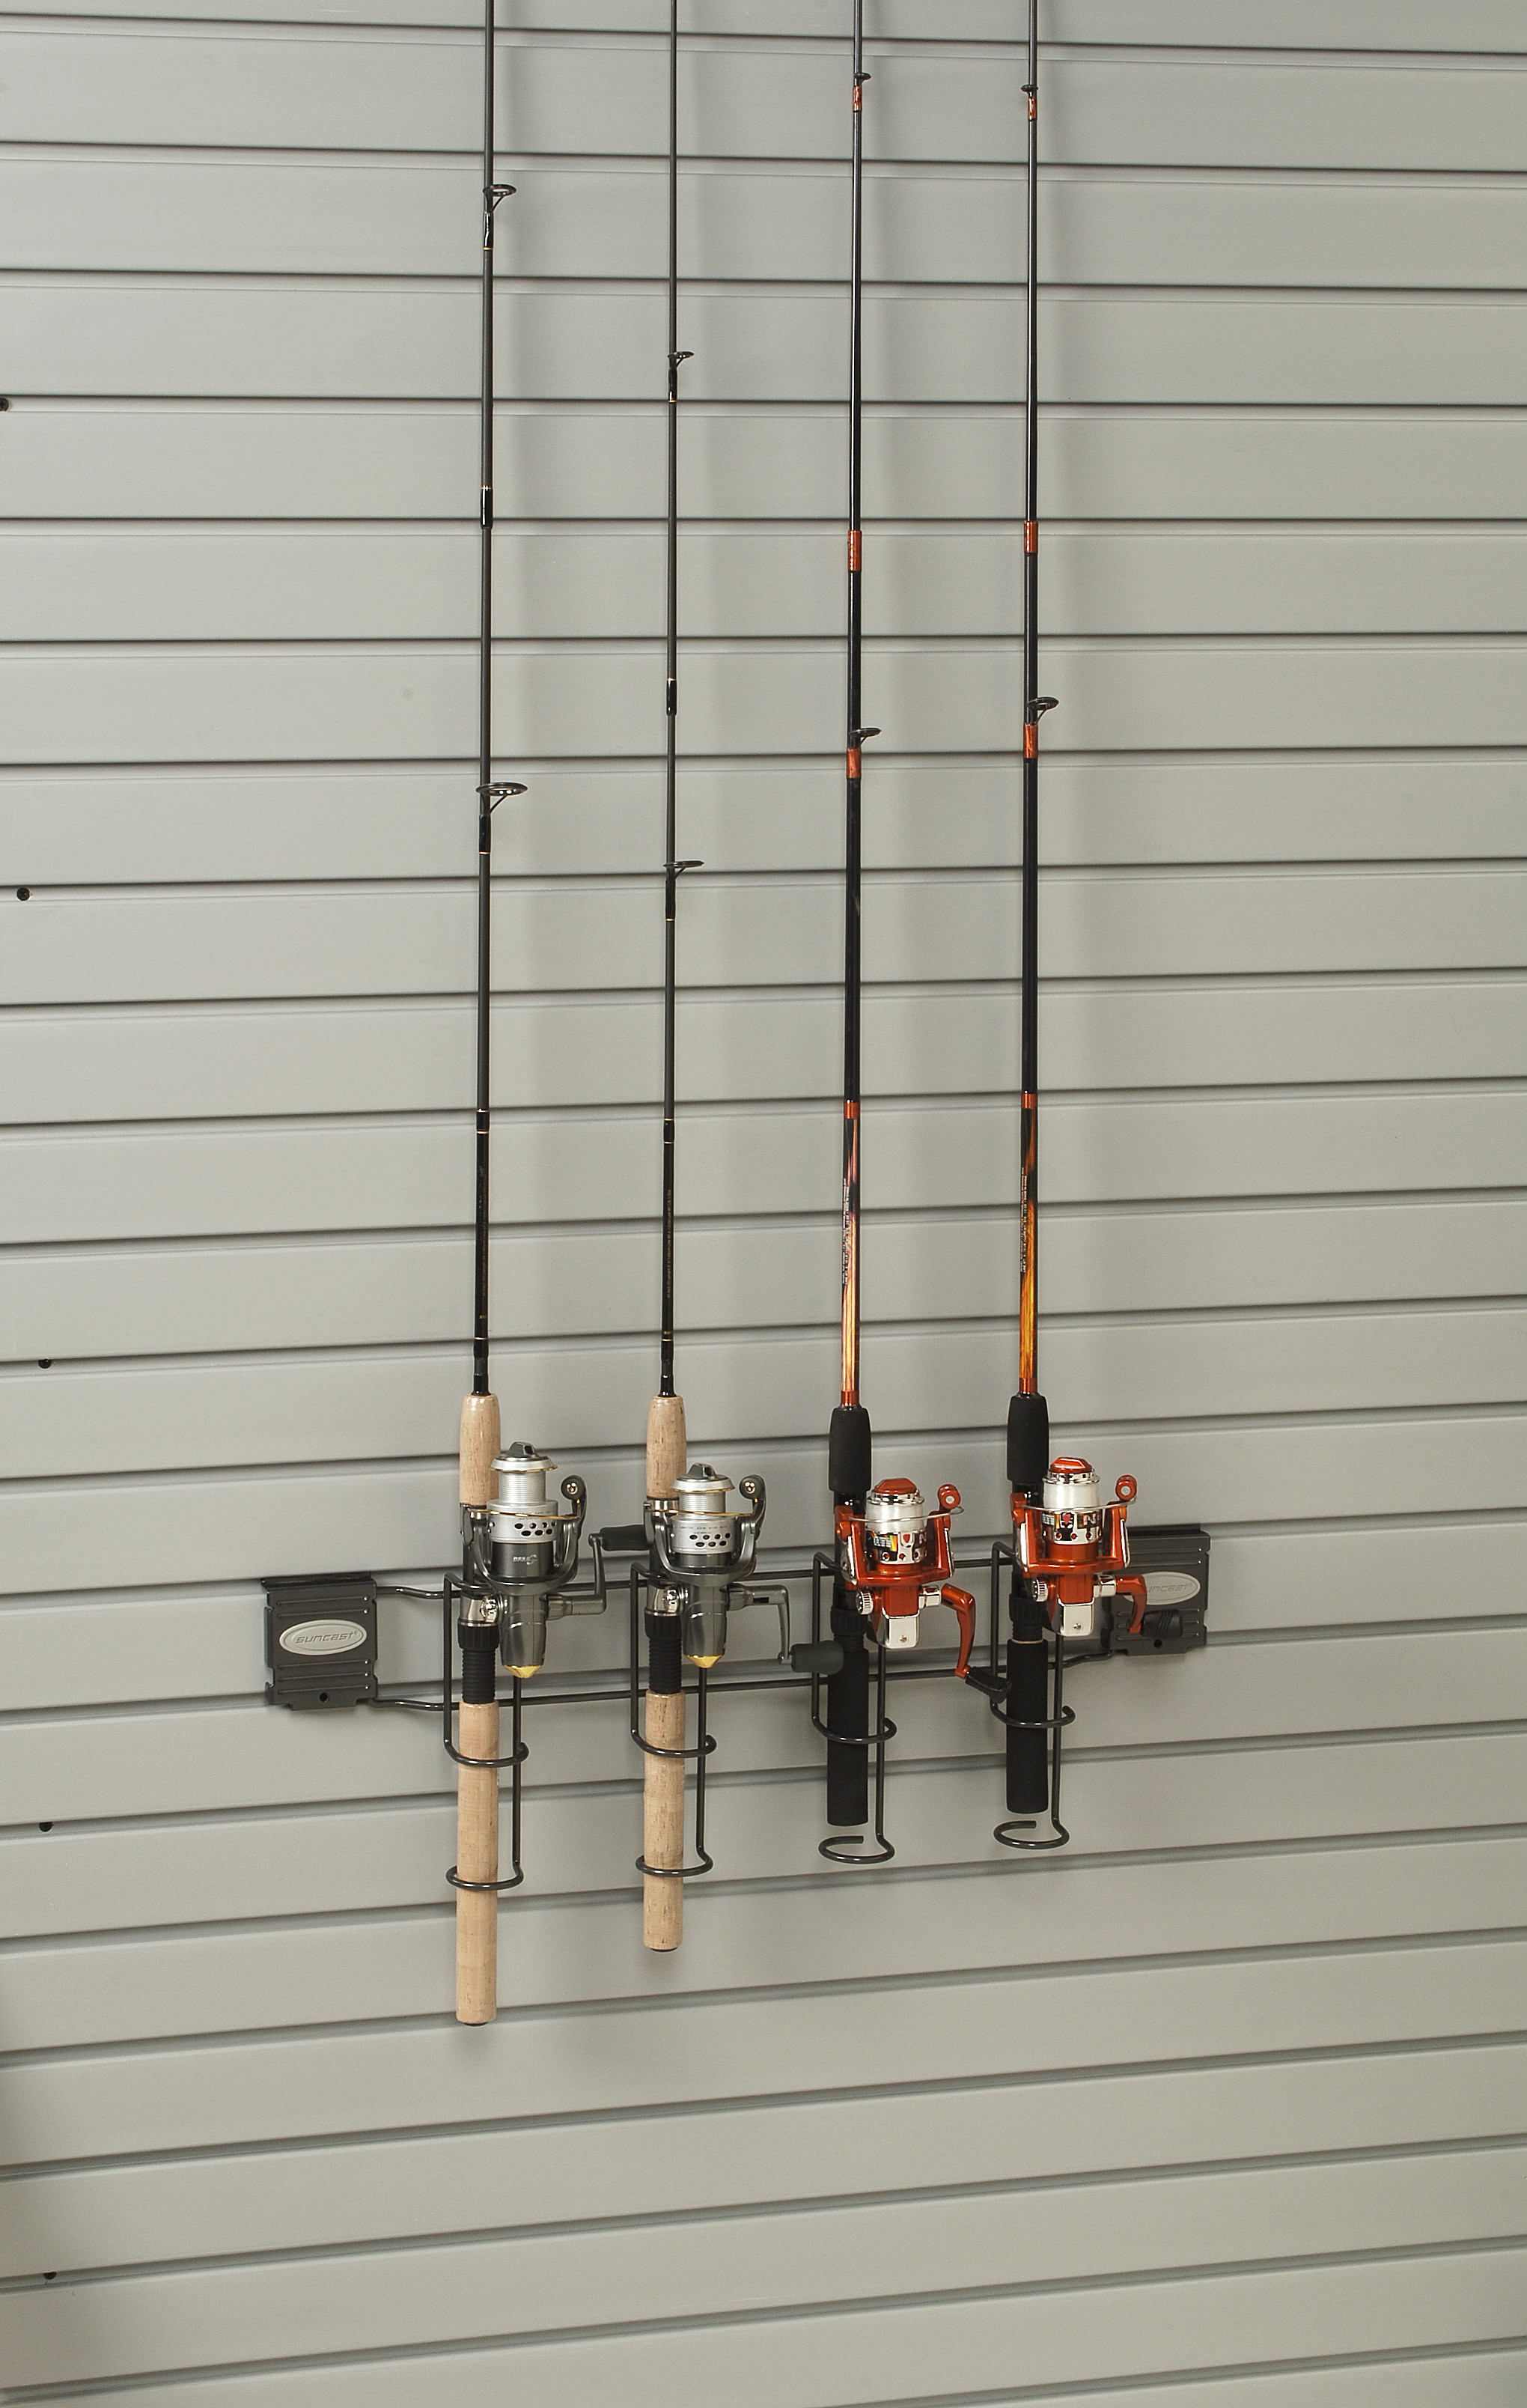 Best ideas about Garage Fishing Rod Storage
. Save or Pin Garage Organizers Garage Organization Systems Now.